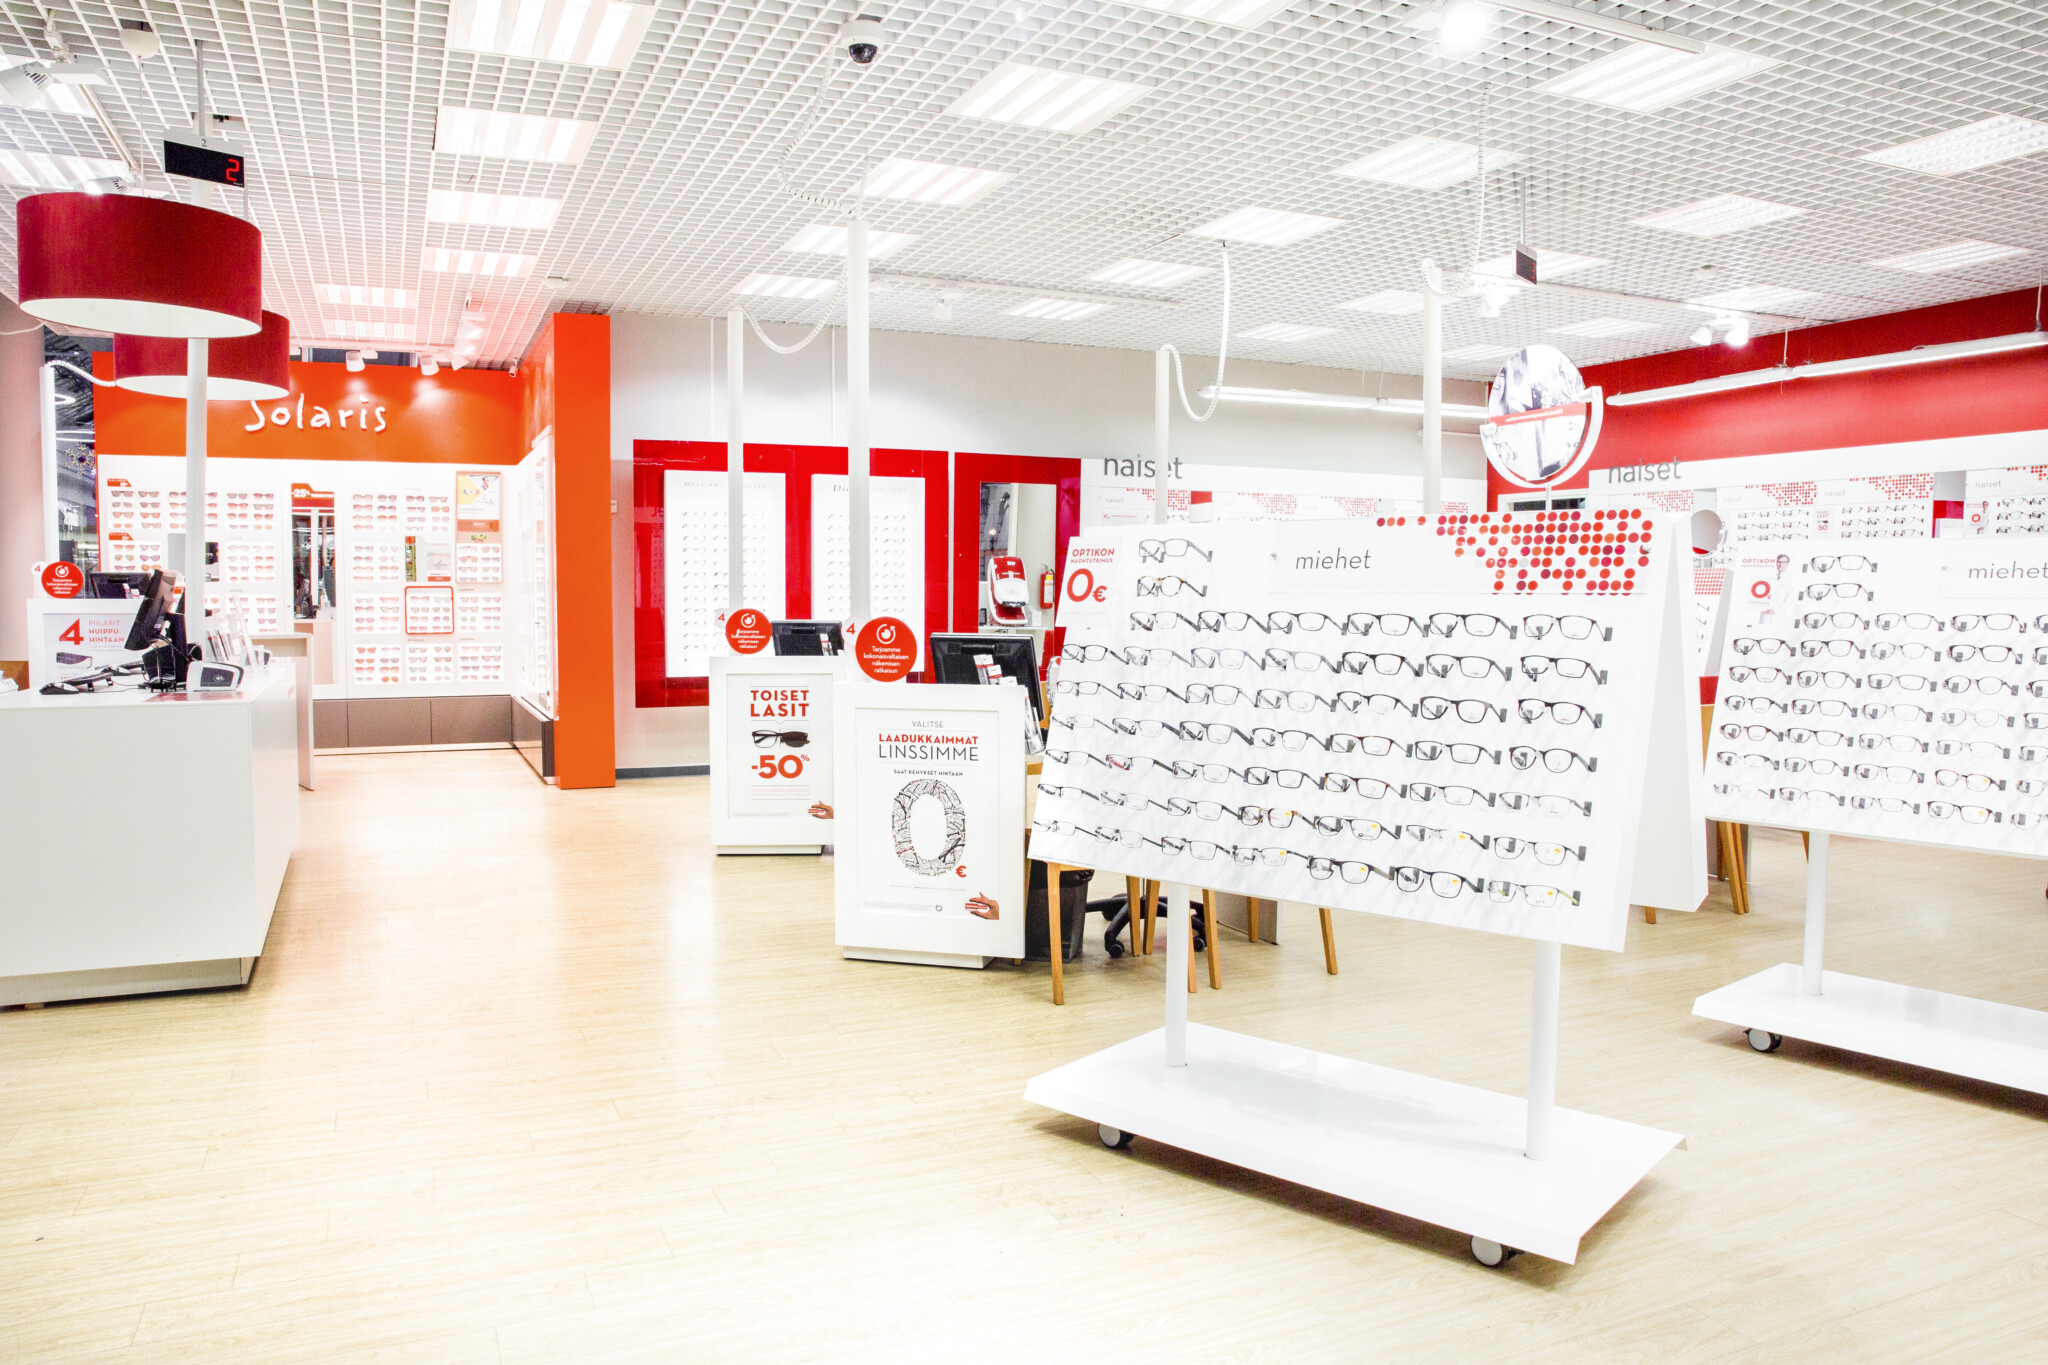 Instru optik öppnar en Solaris specialaffär för solglasögon i Stockmanns Helsingfors varuhus